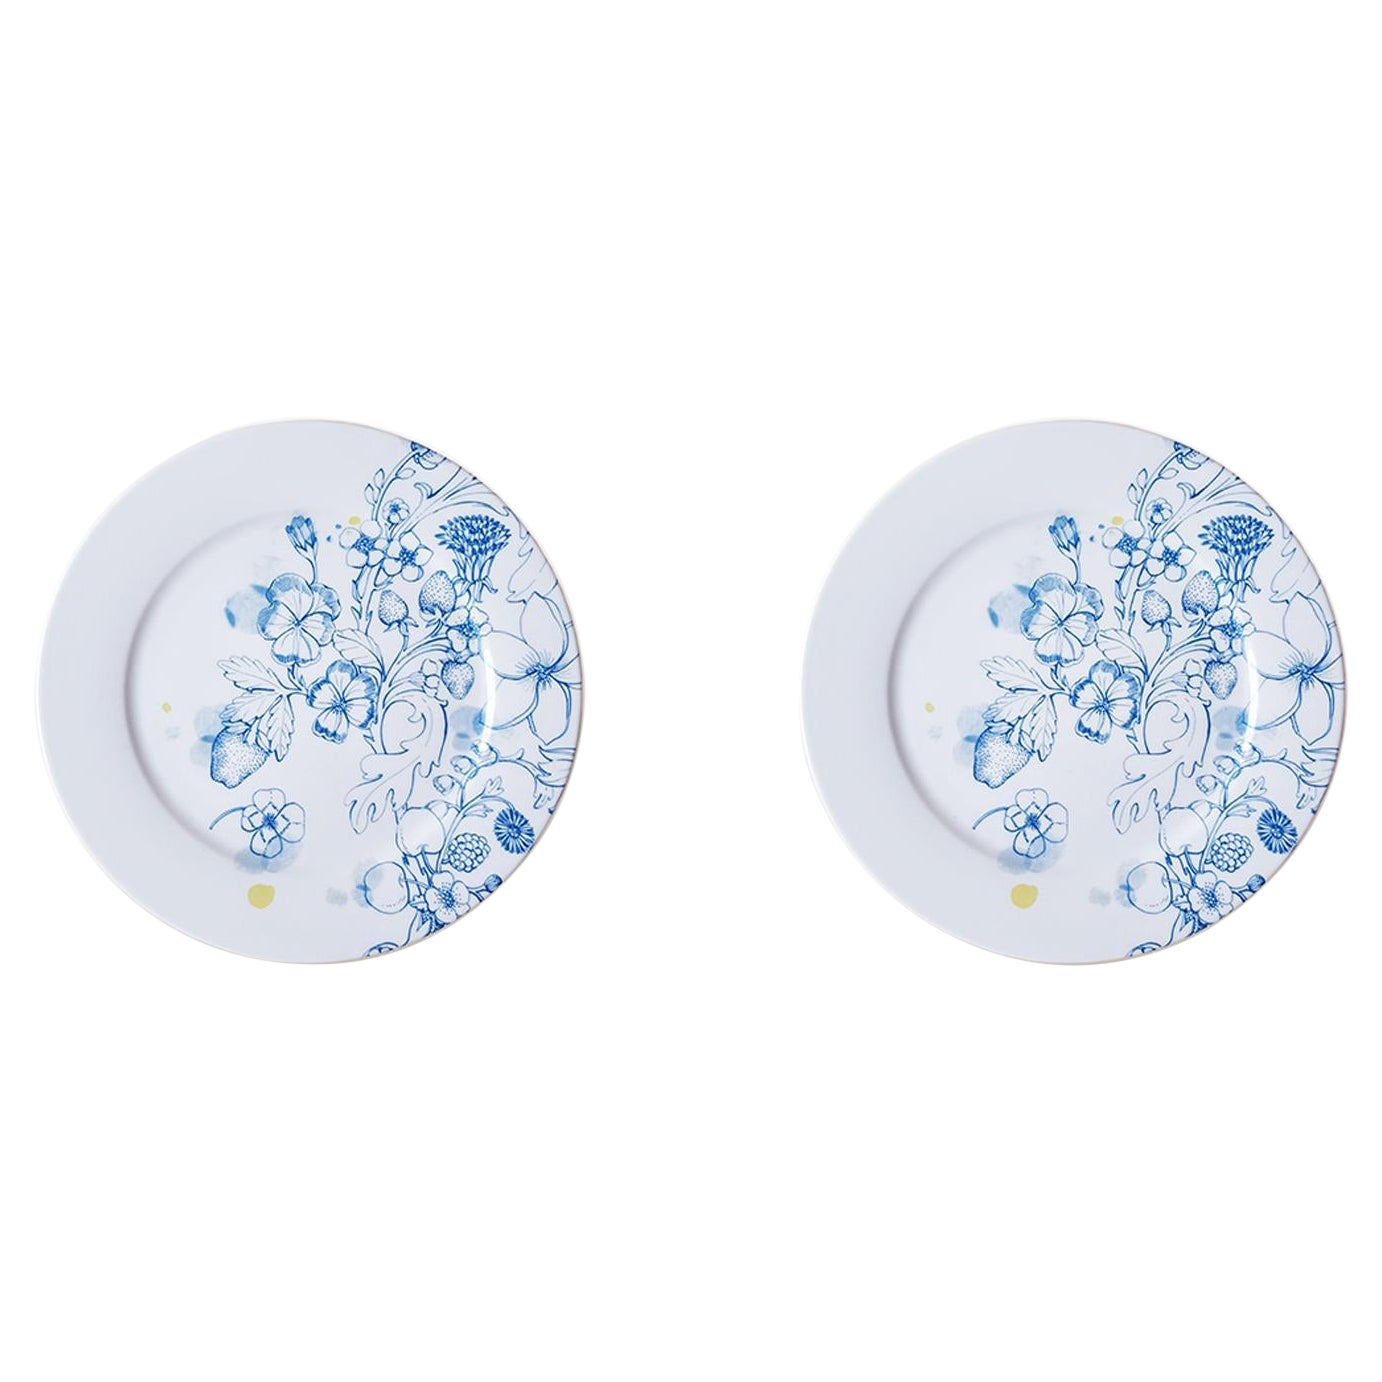 Blauer Sommer, zeitgenössisches Porzellan-Essteller-Set mit blauem Blumenmuster